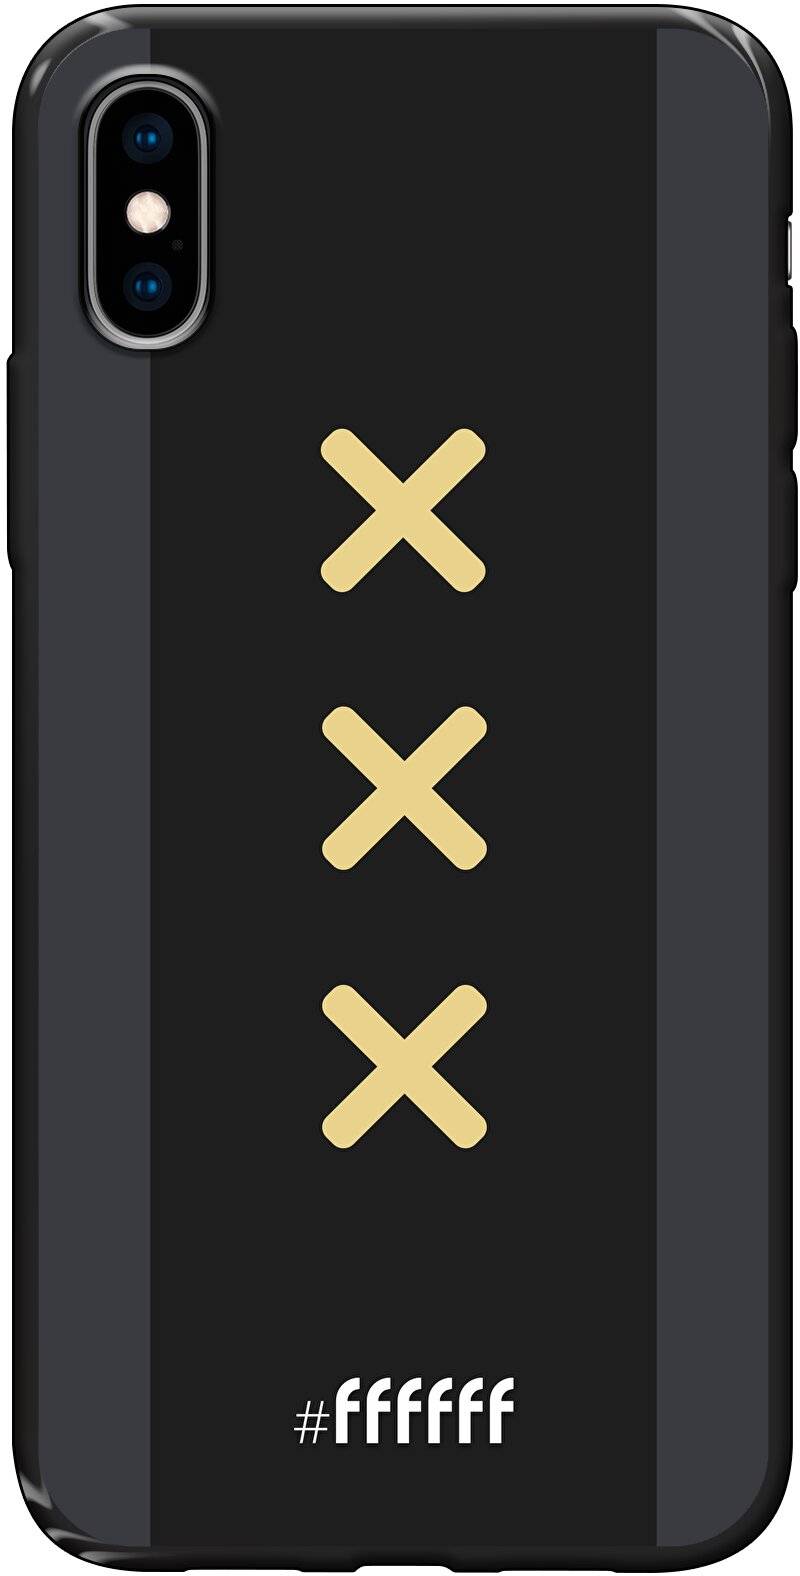 Ajax Europees Uitshirt 2020-2021 iPhone X